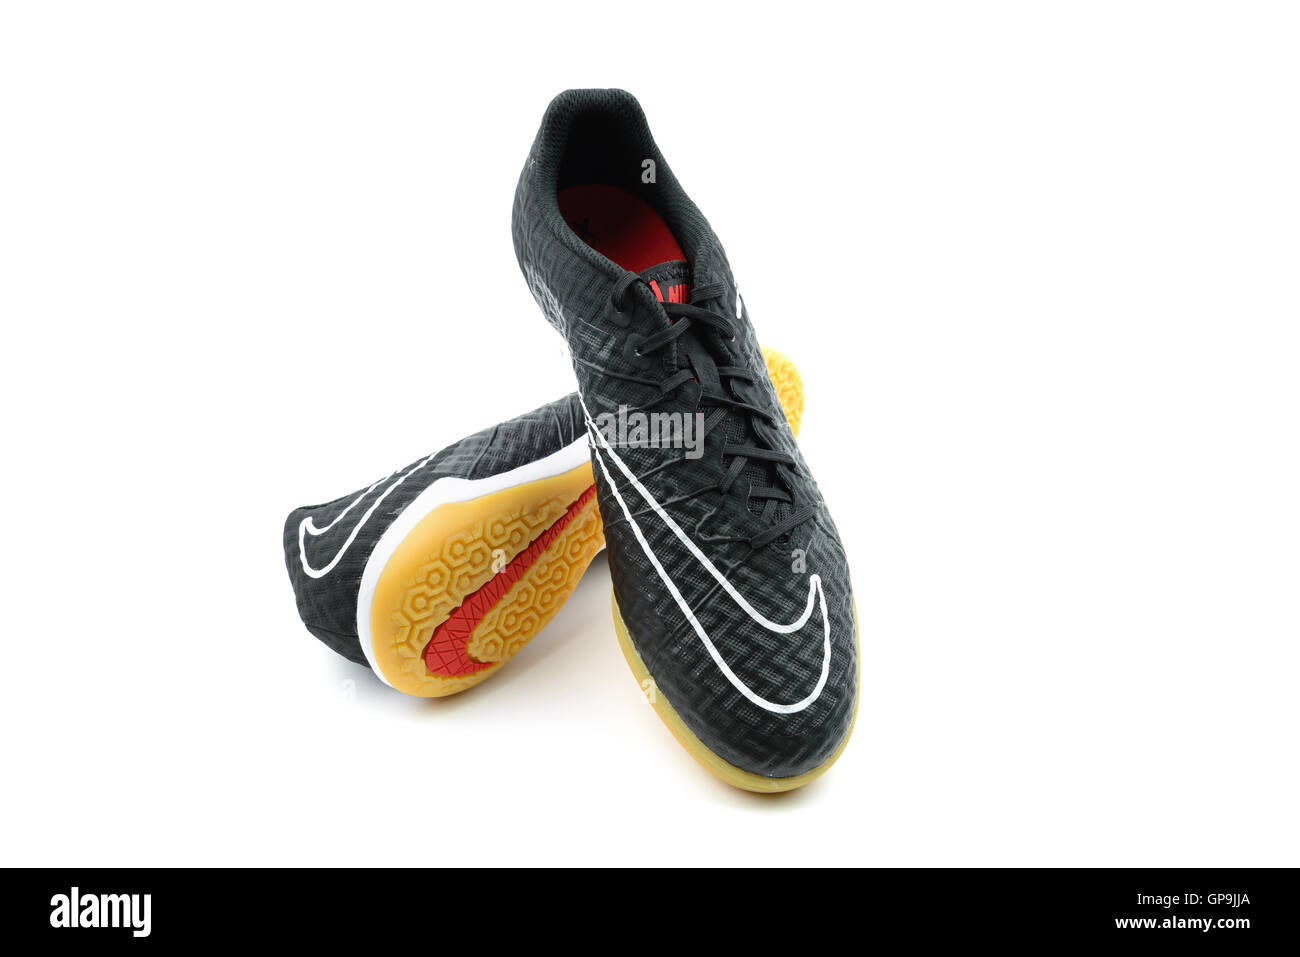 Nike brand fußballschuhe Stockfotos und -bilder Kaufen - Alamy